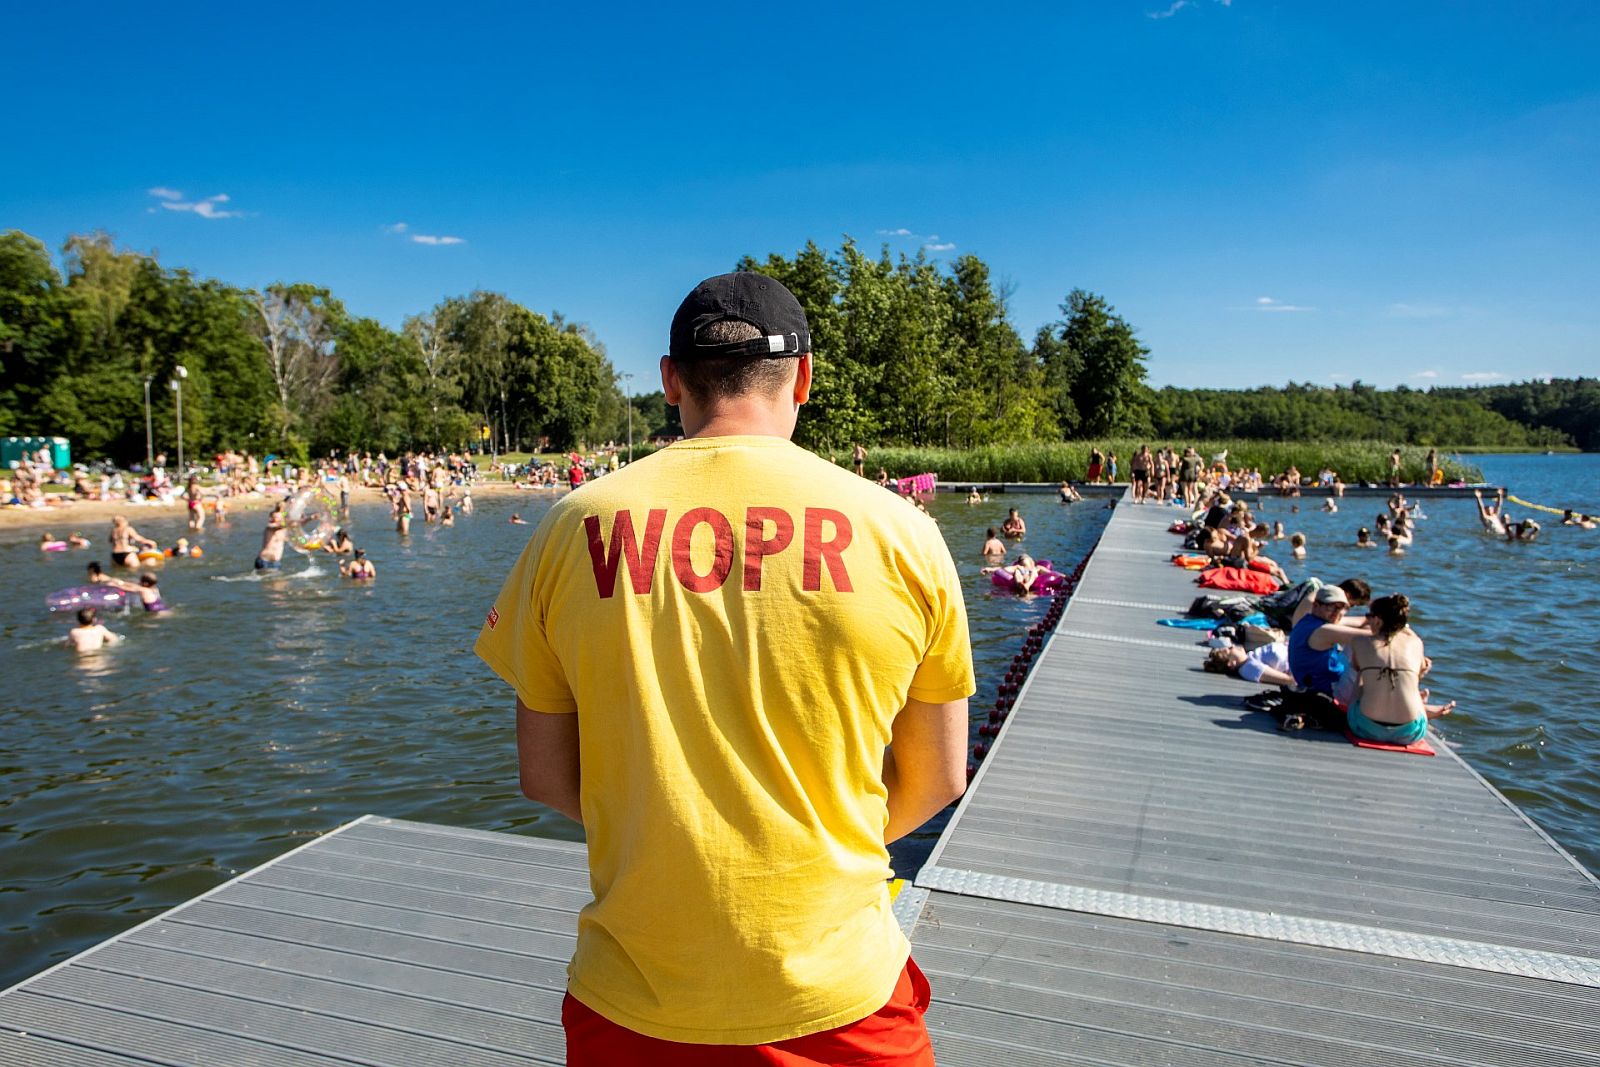 Ratownik WOPR w żółtej koszulce pilnuje bezpieczeństwa stojąc na drewnianym pomoście nad jeziorem, w wodzie kąpią się dzieci i młodzież - grafika artykułu